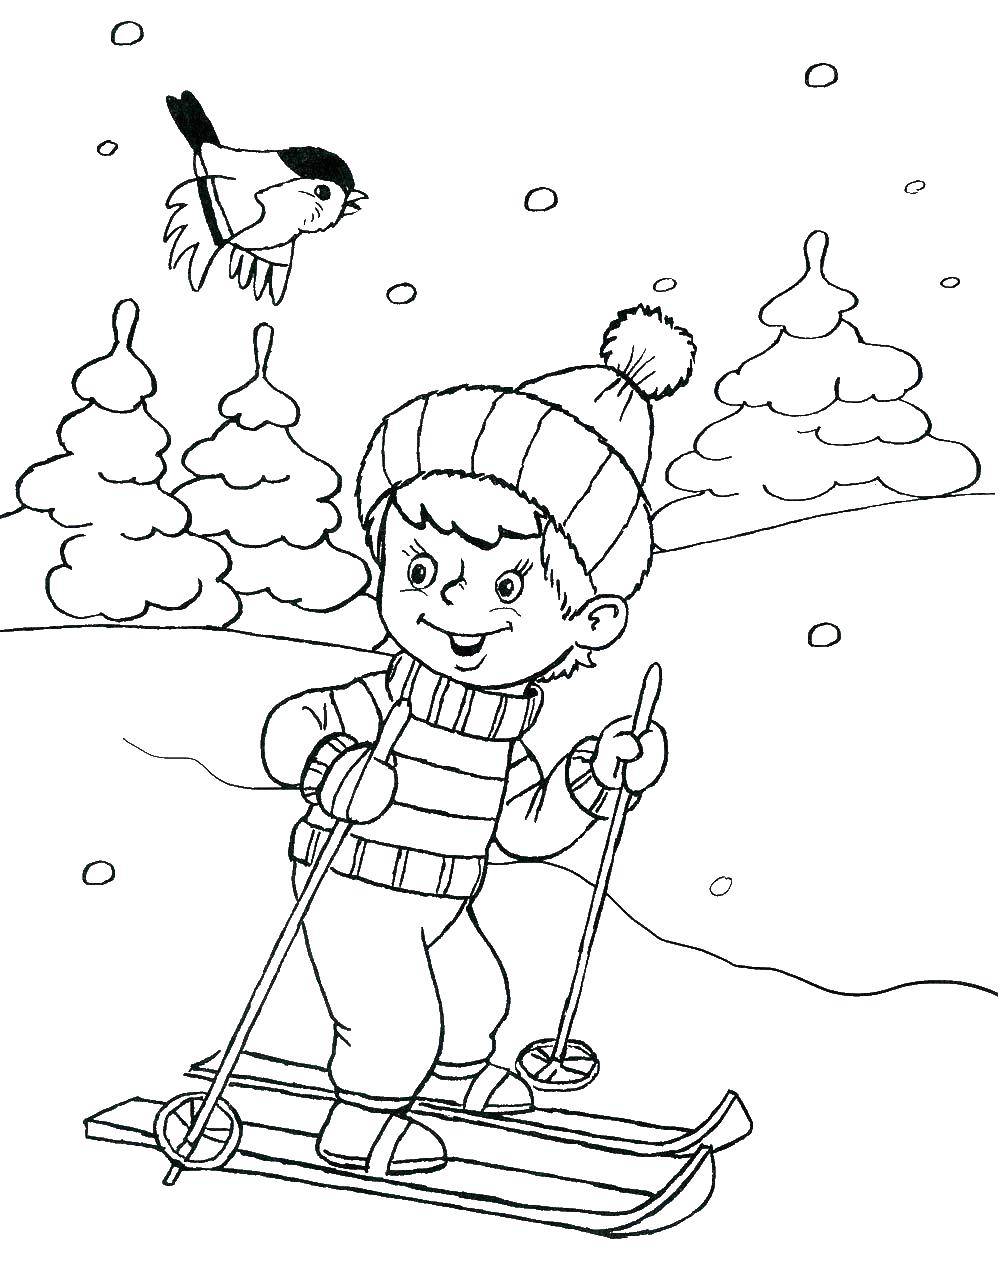 Название: Раскраска Мальчик катается на лыжах. Категория: Люди. Теги: лыжи, мальчик.